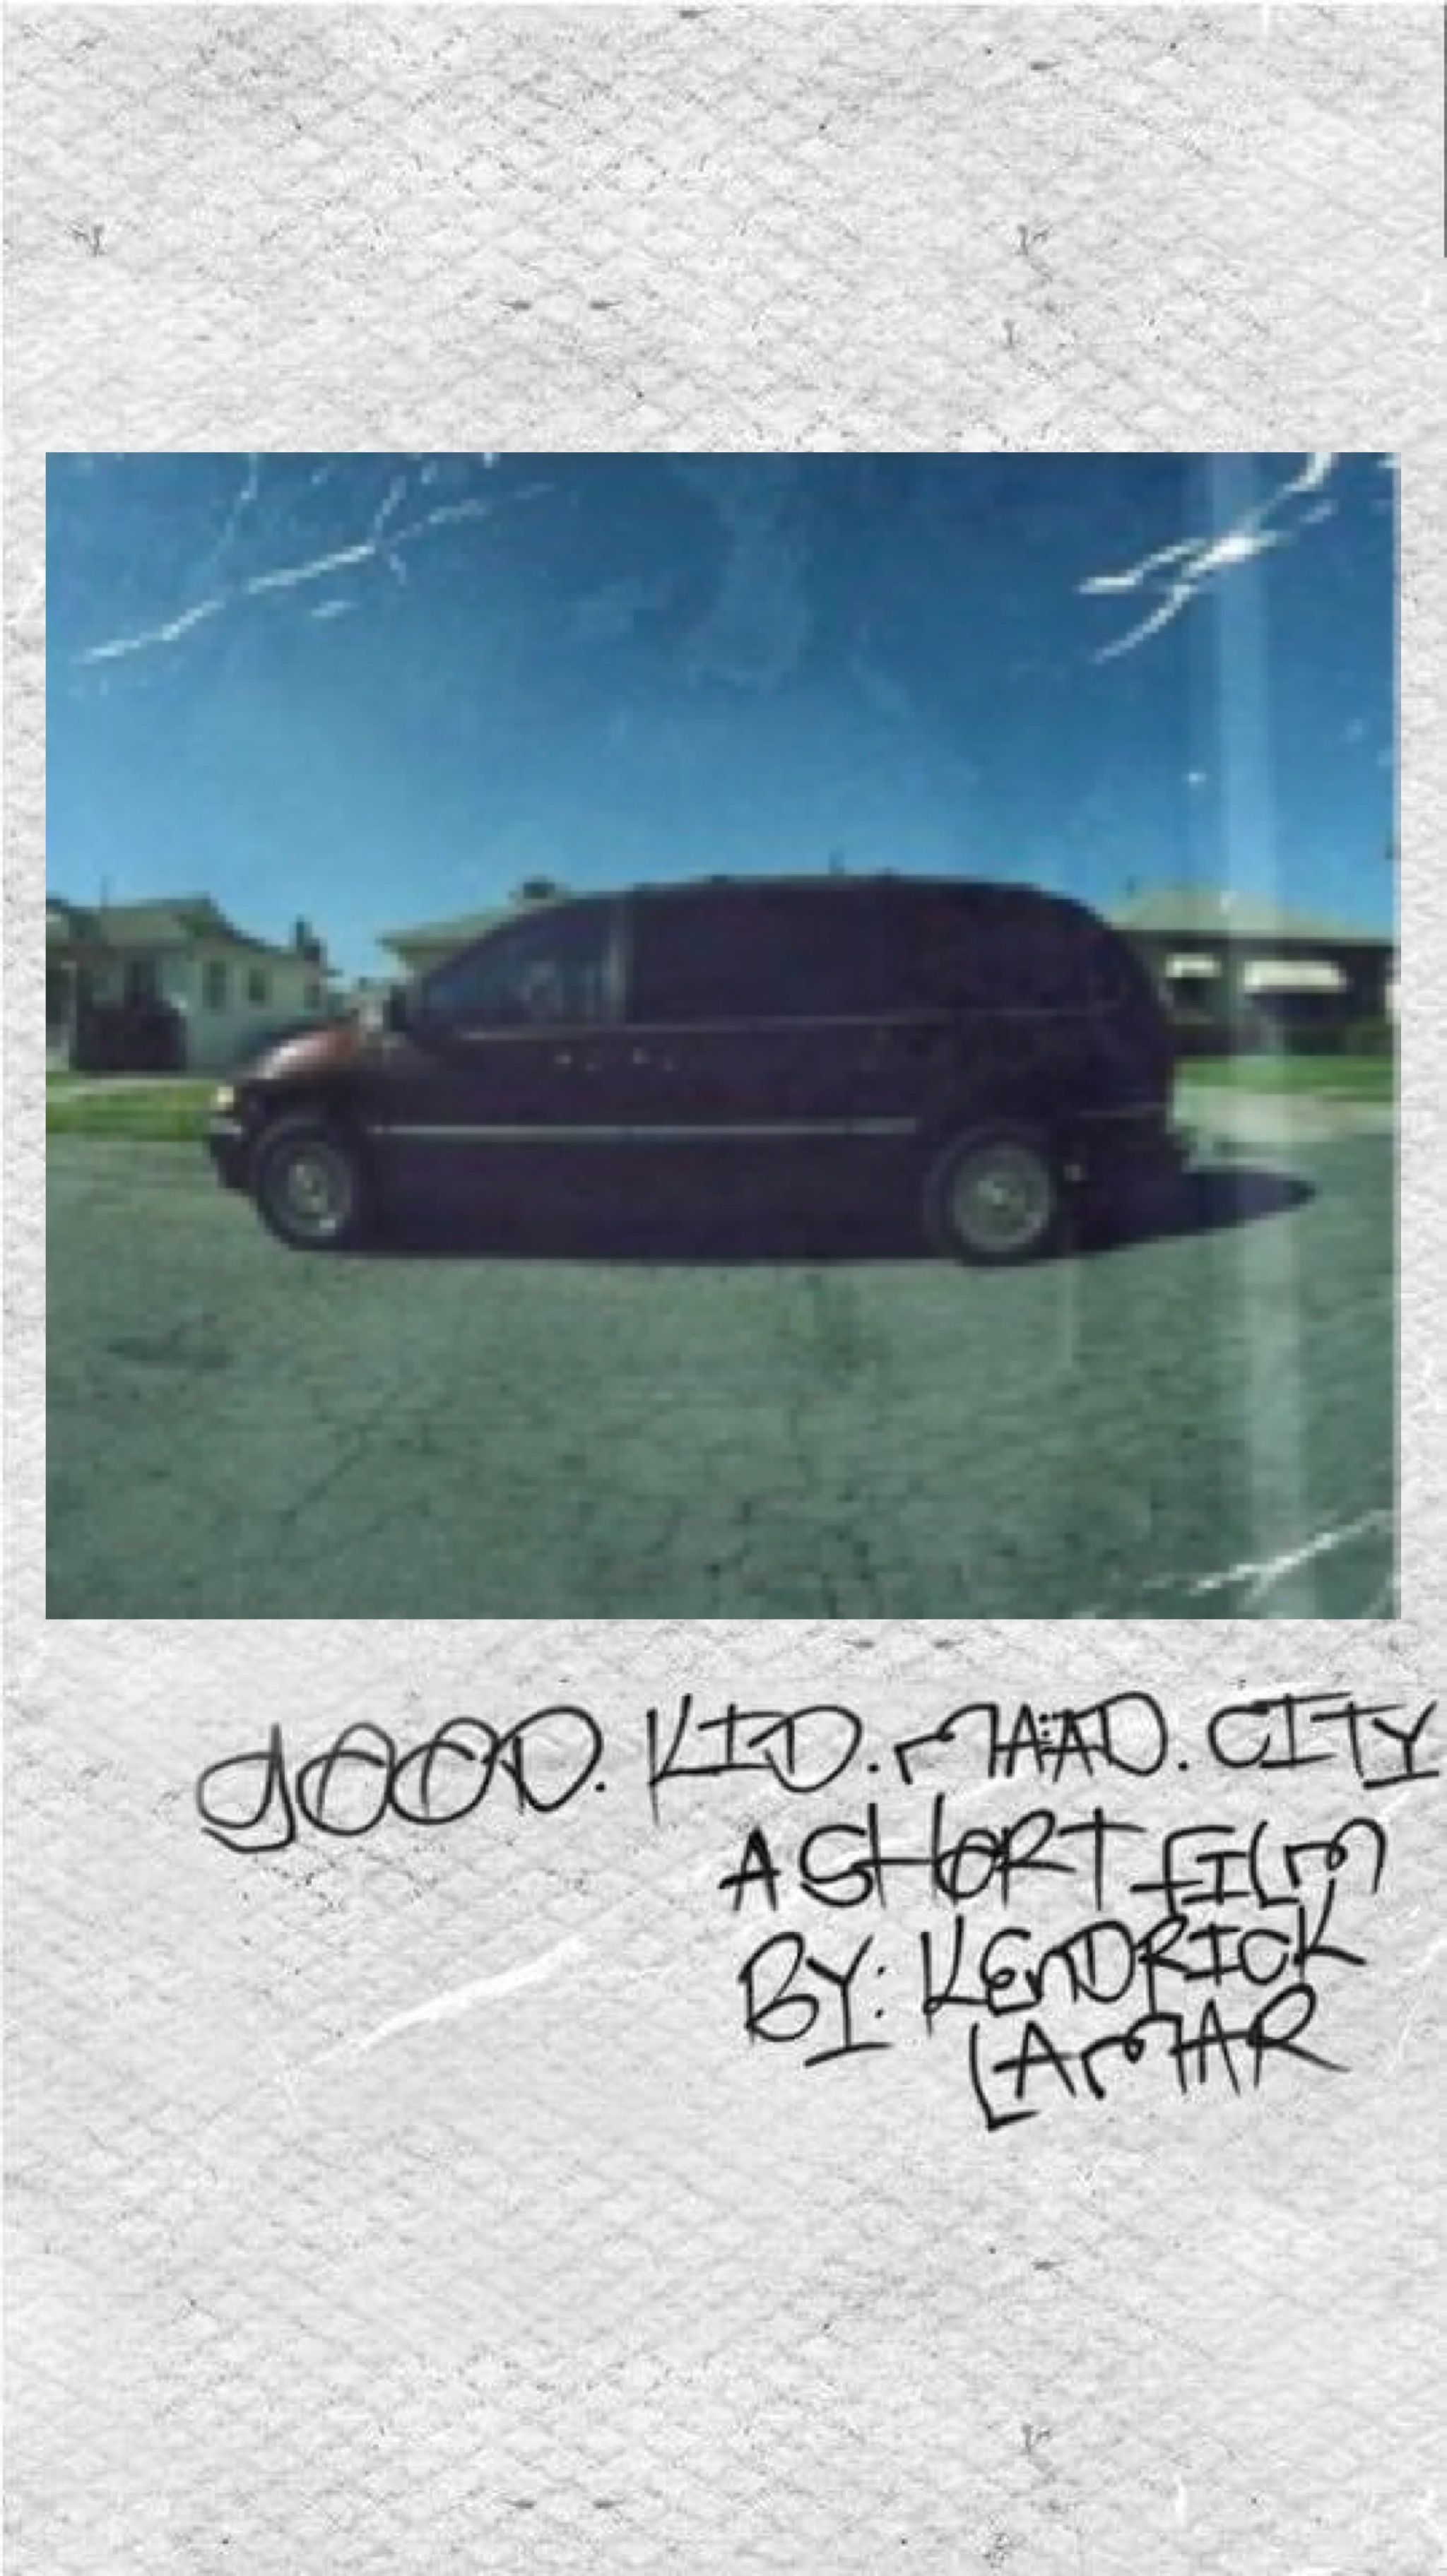 Kendrick Lamar: Good Kid, M.A.A.D City